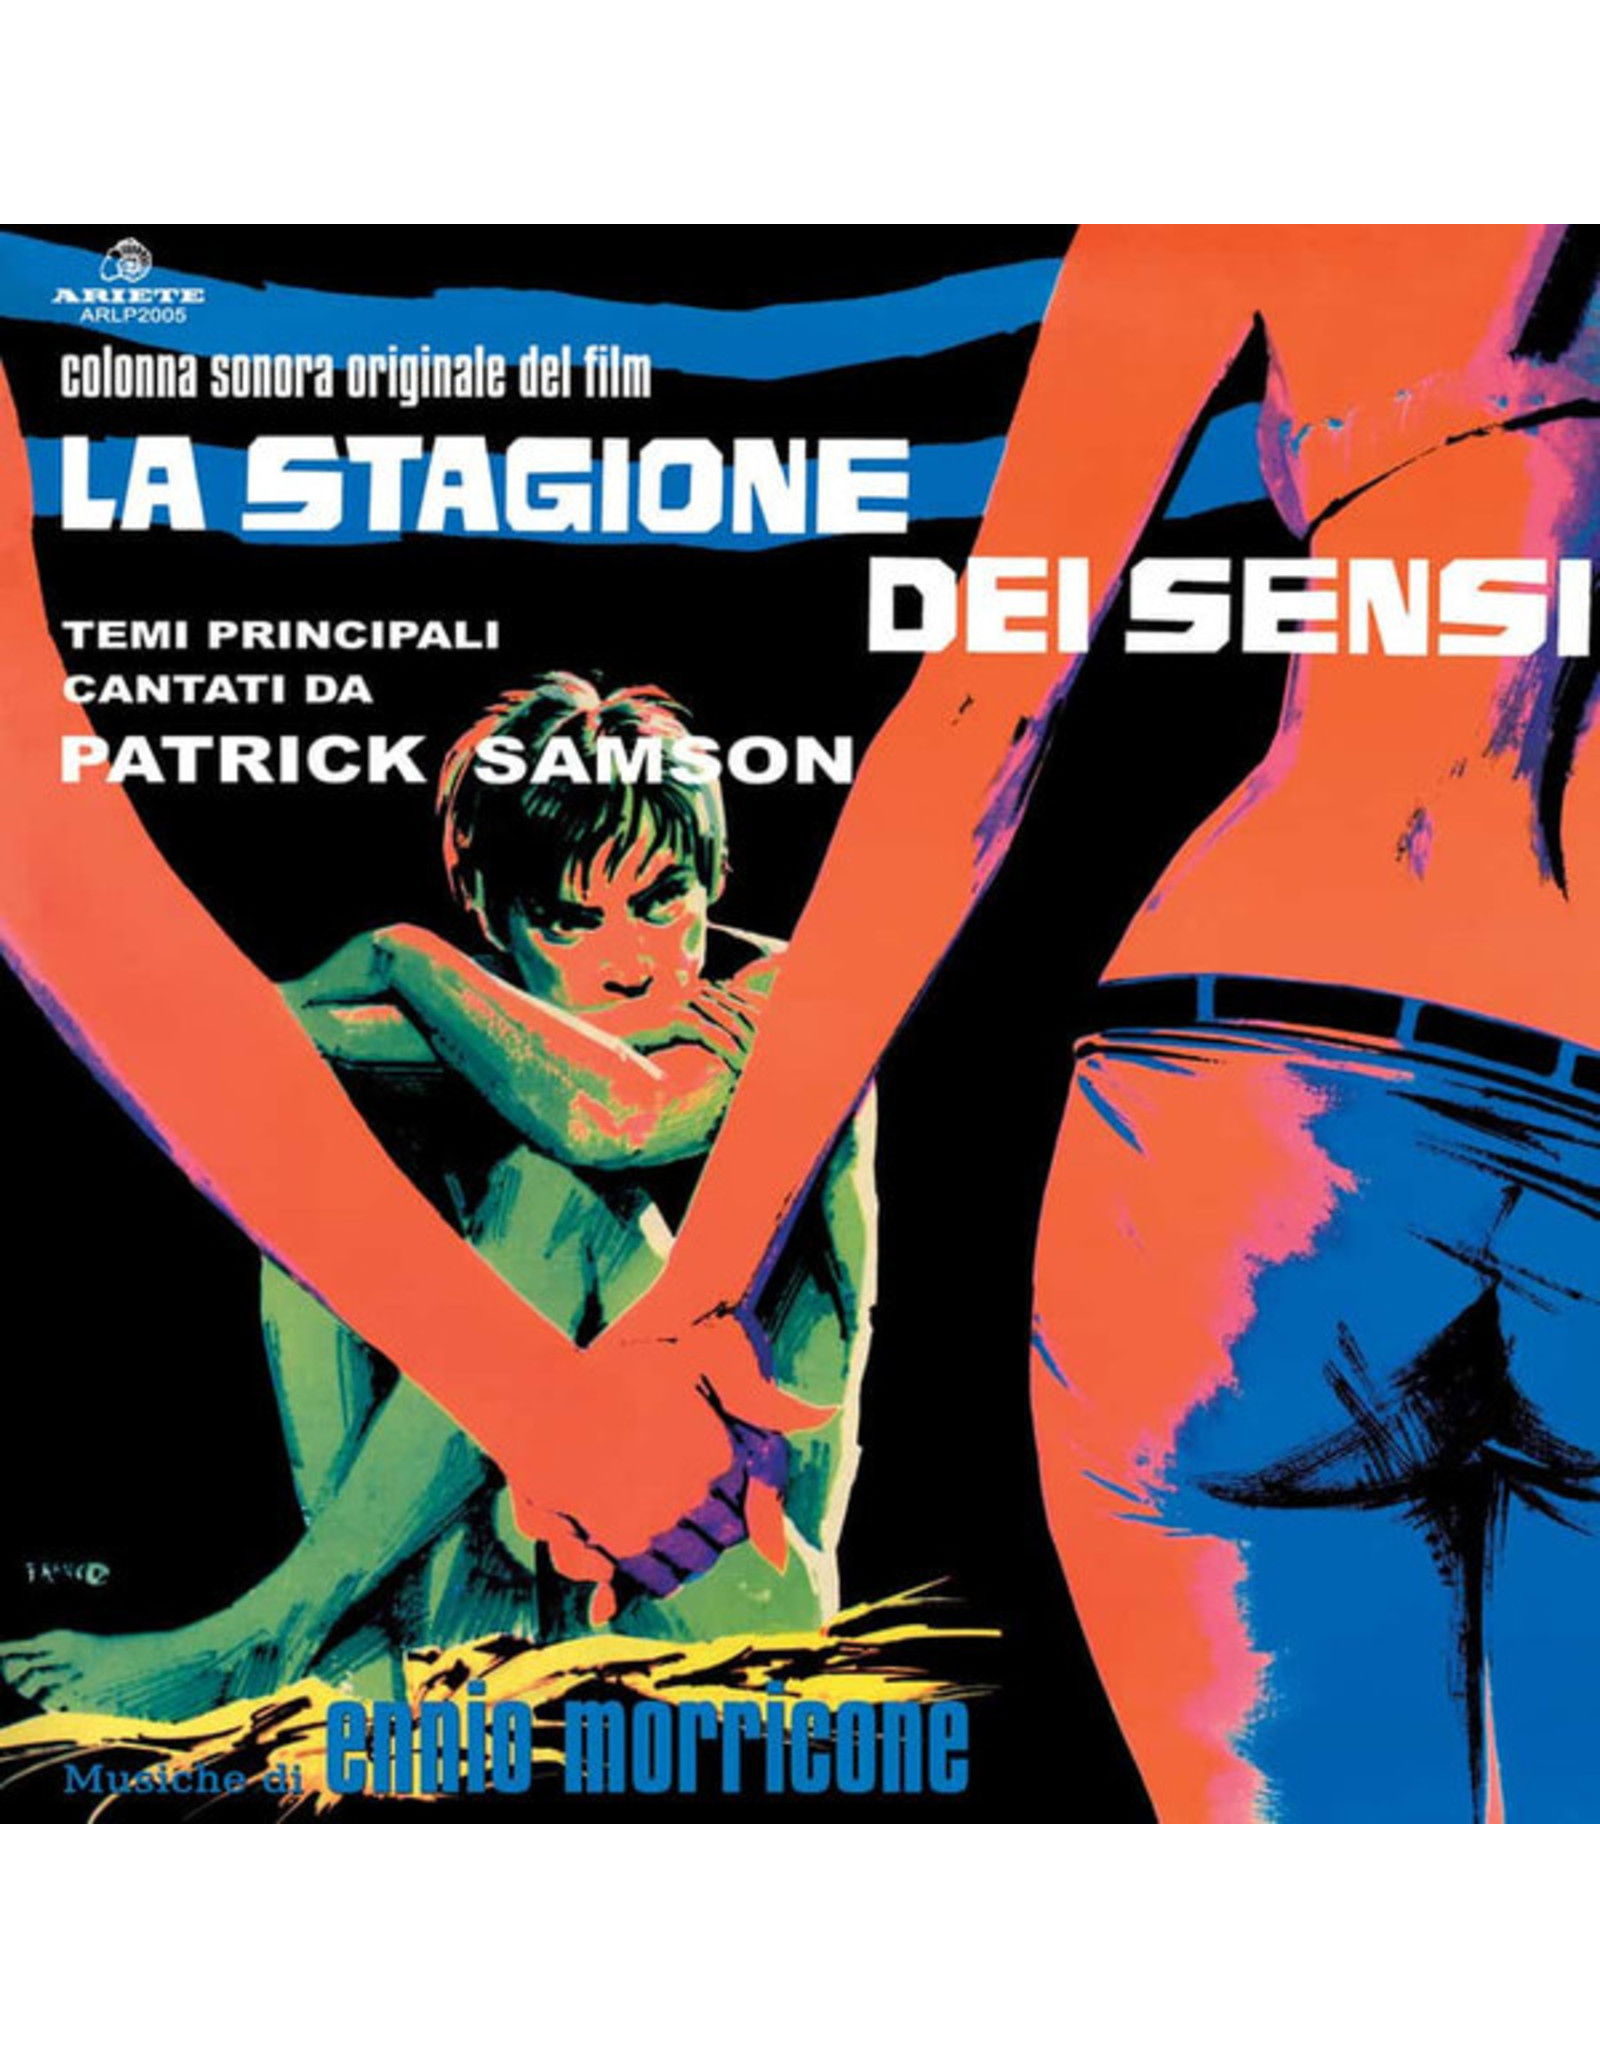 New Vinyl Ennio Morricone – La Stagione Dei Sensi OST LP